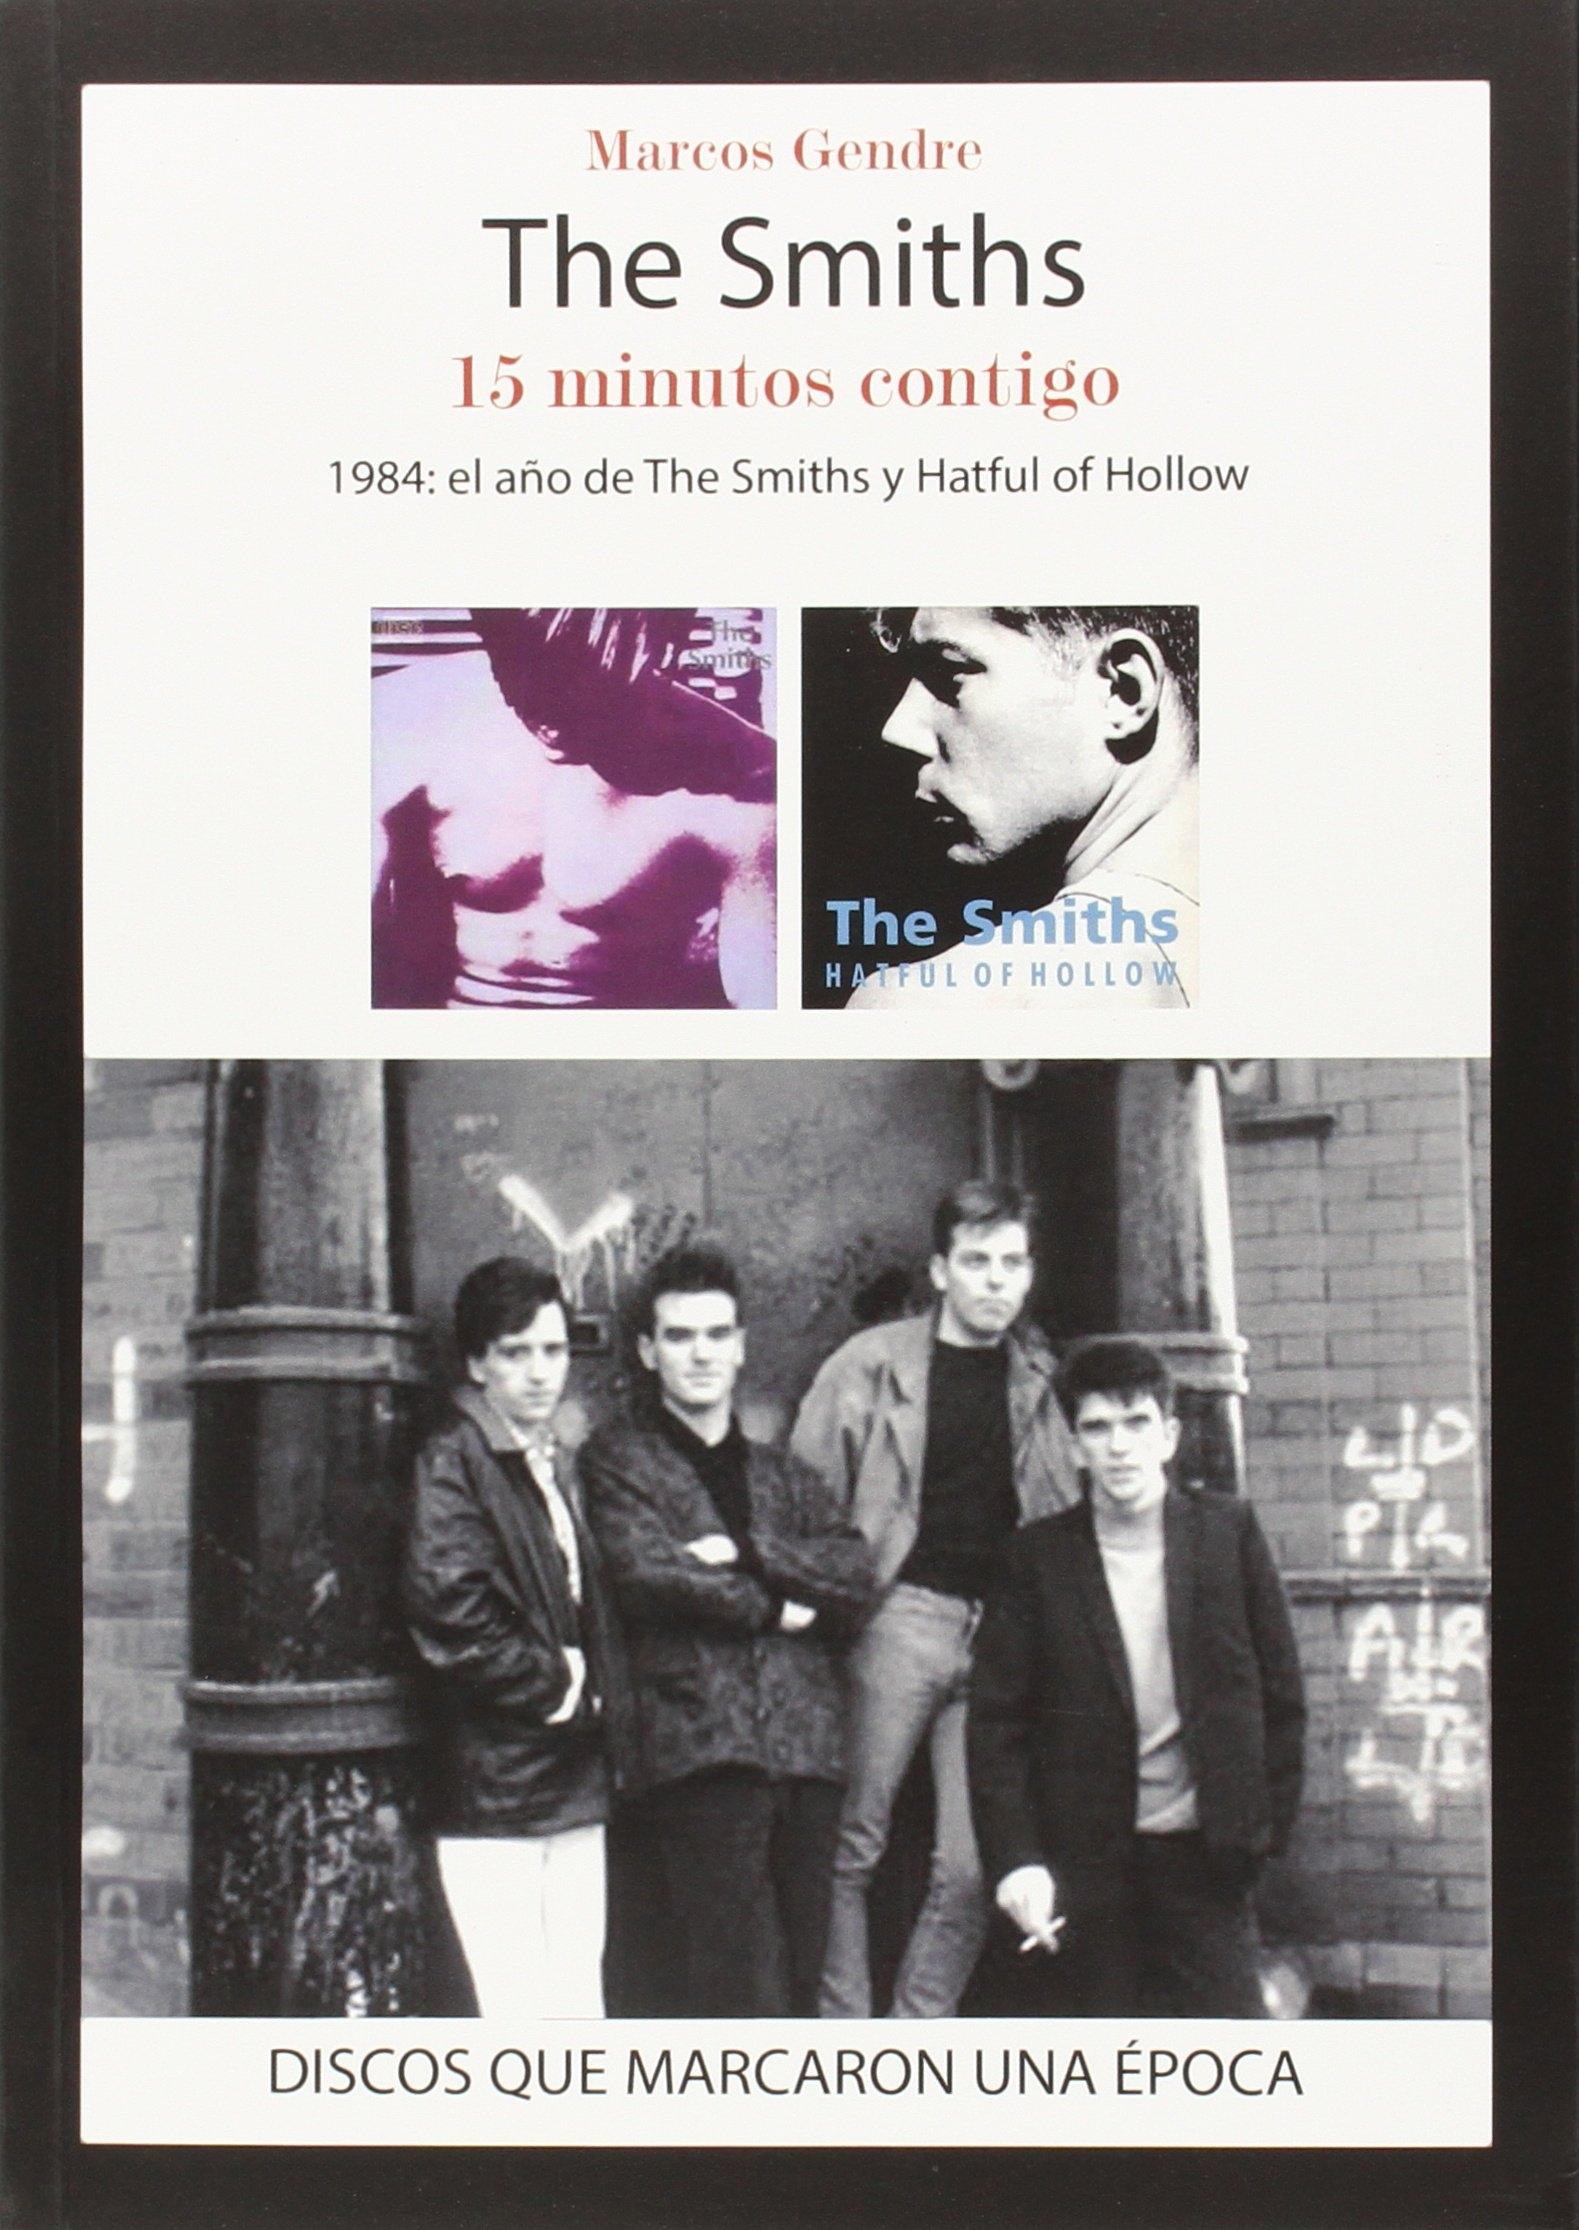 THE SMITHS. 15 MINUTOS CONTIGO "1984: EL AÑO DE THE SMITHS Y HATFUL OF HOLLOW"